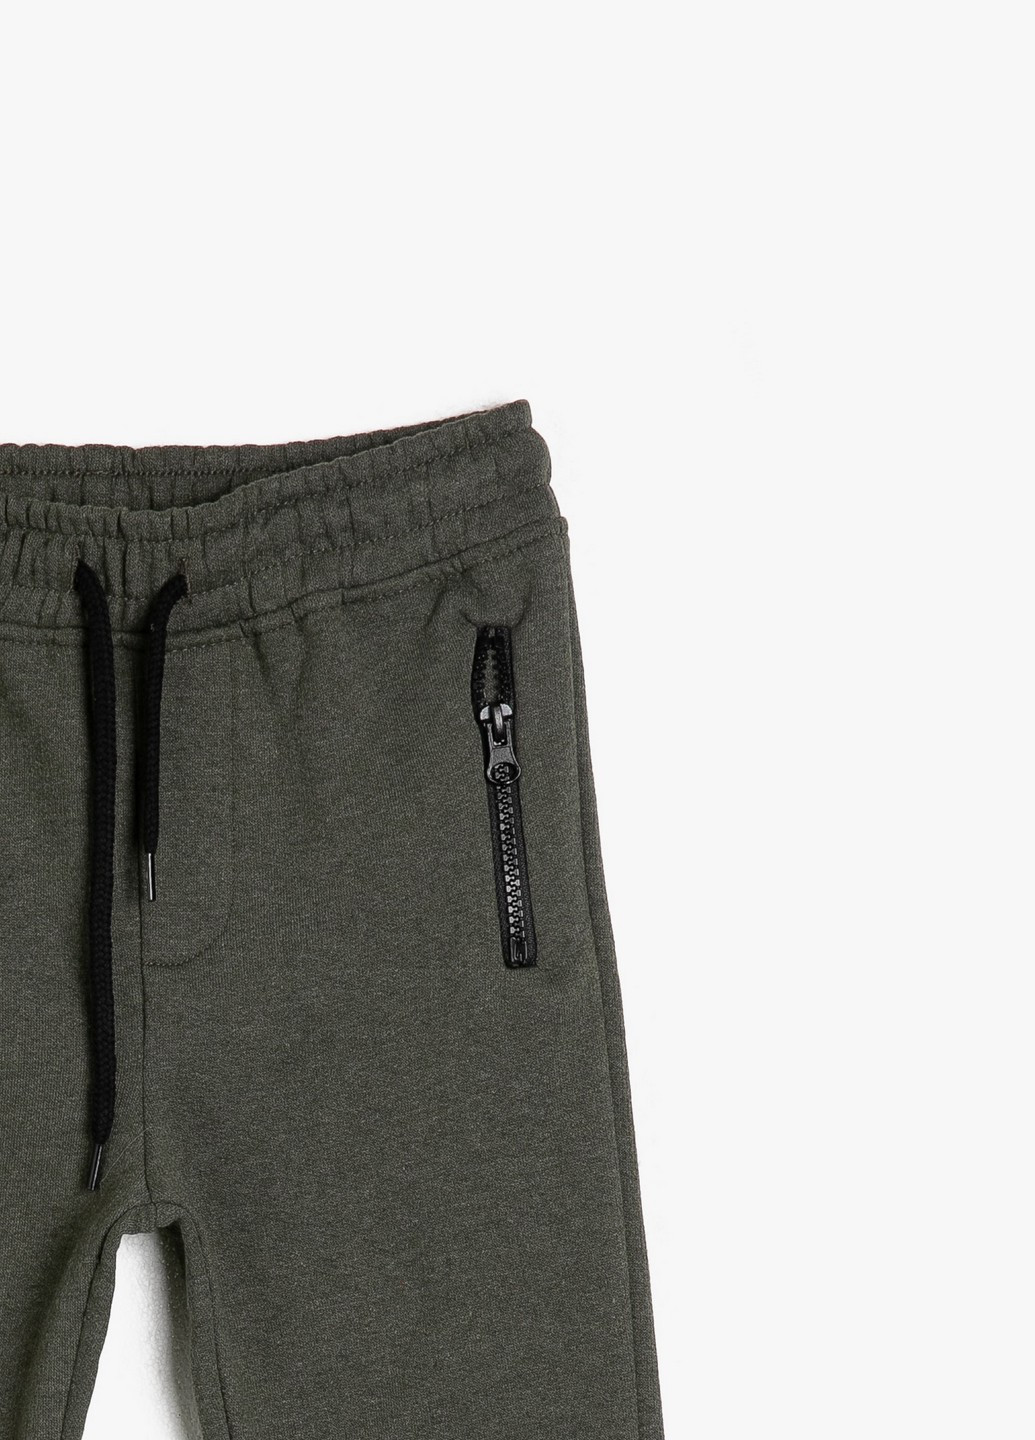 Темно-серые спортивные демисезонные брюки джоггеры KOTON